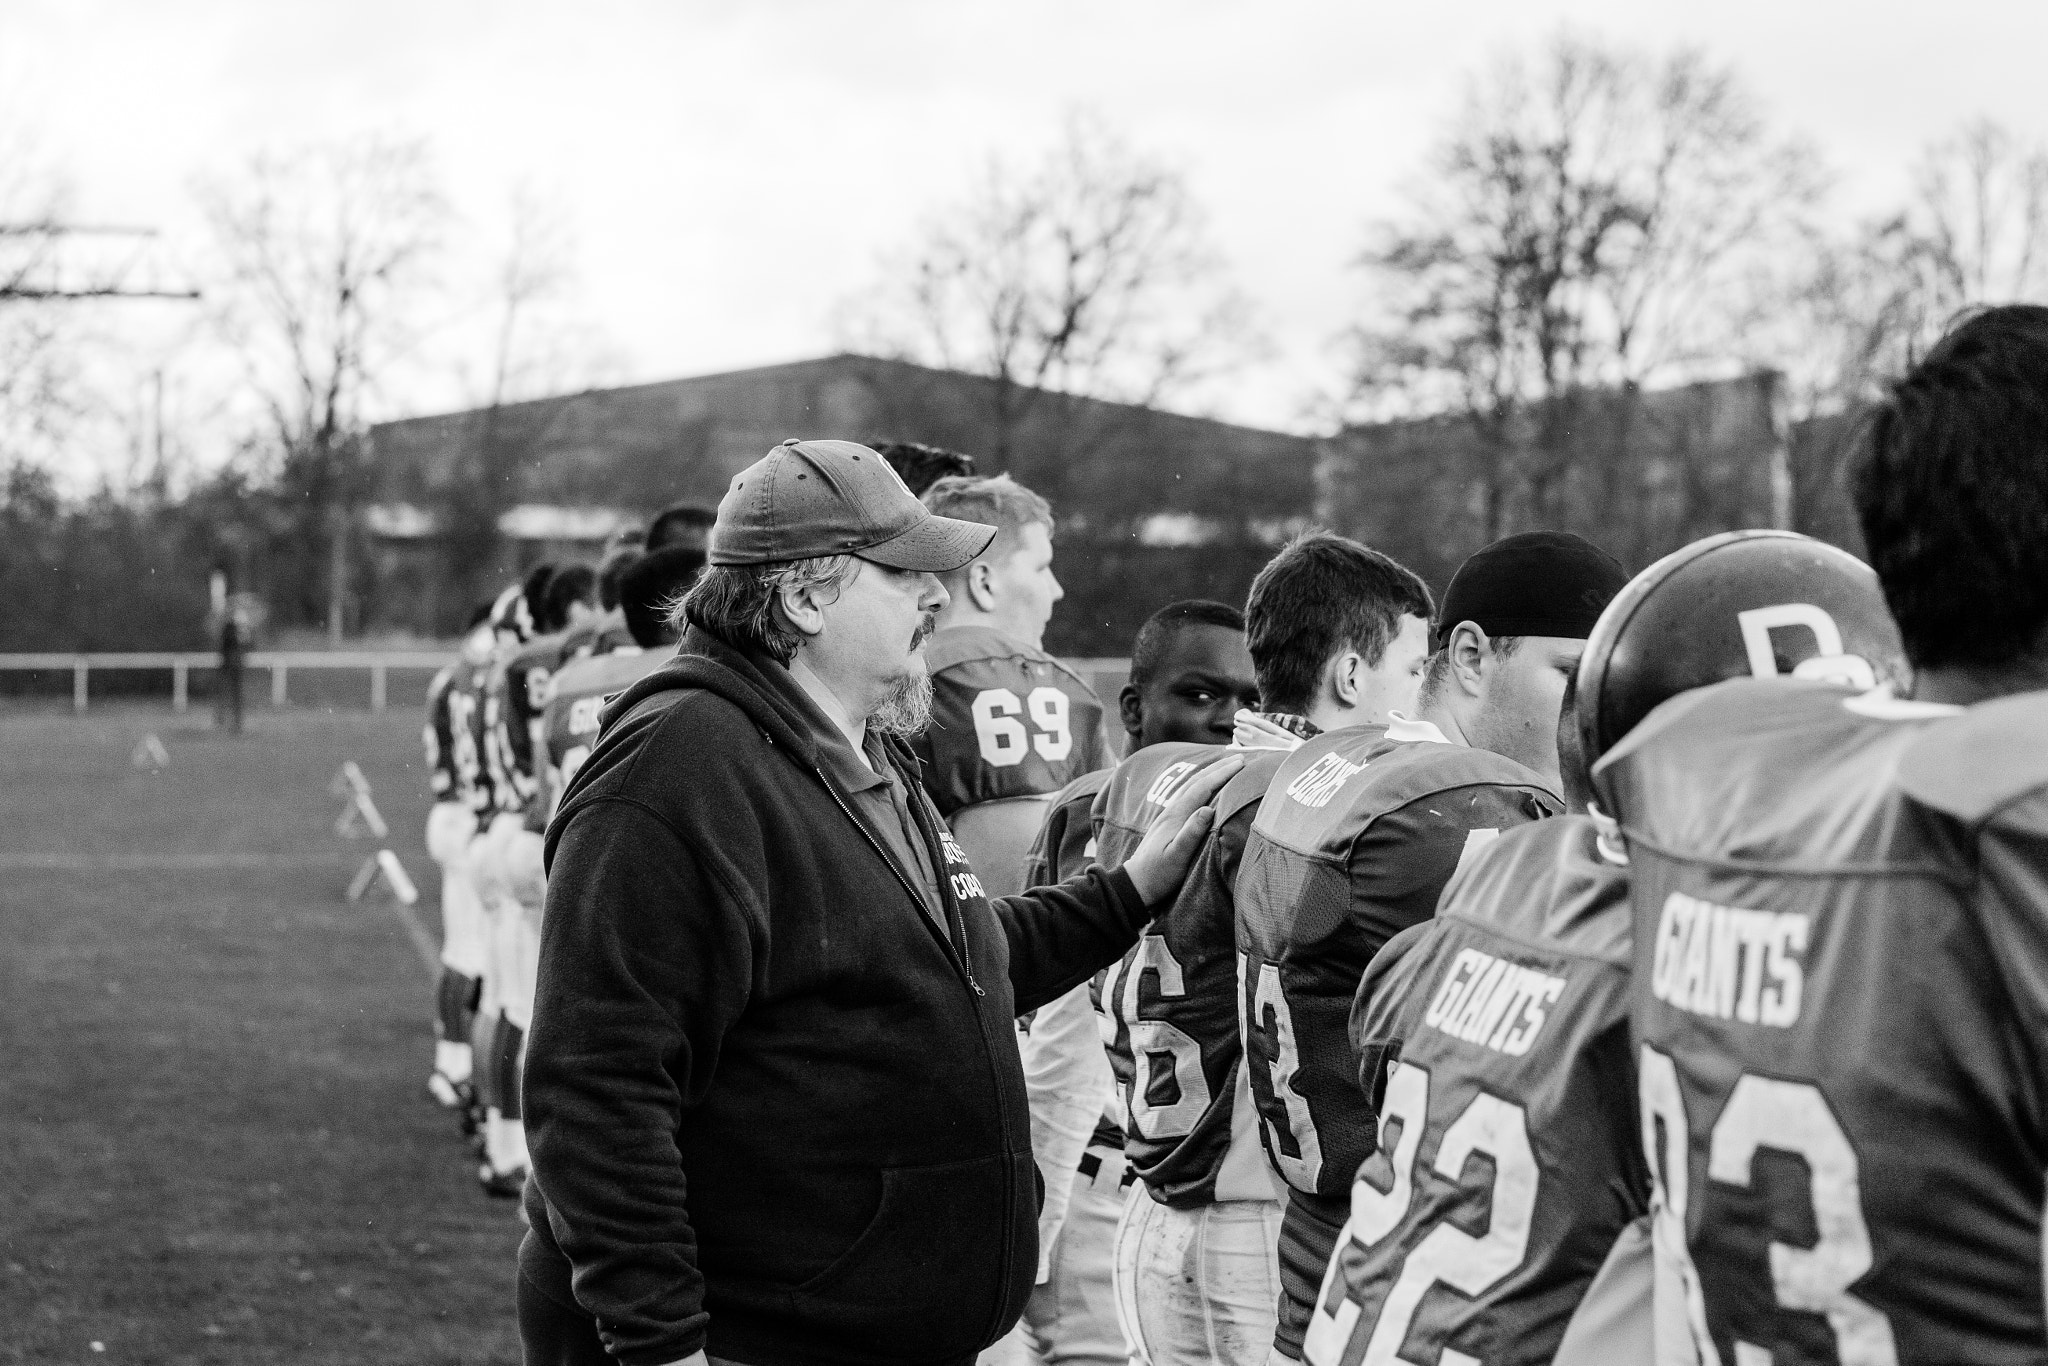 GFLJ 2015 - Dortmund Giants U19 vs. Cologne Falcons U19